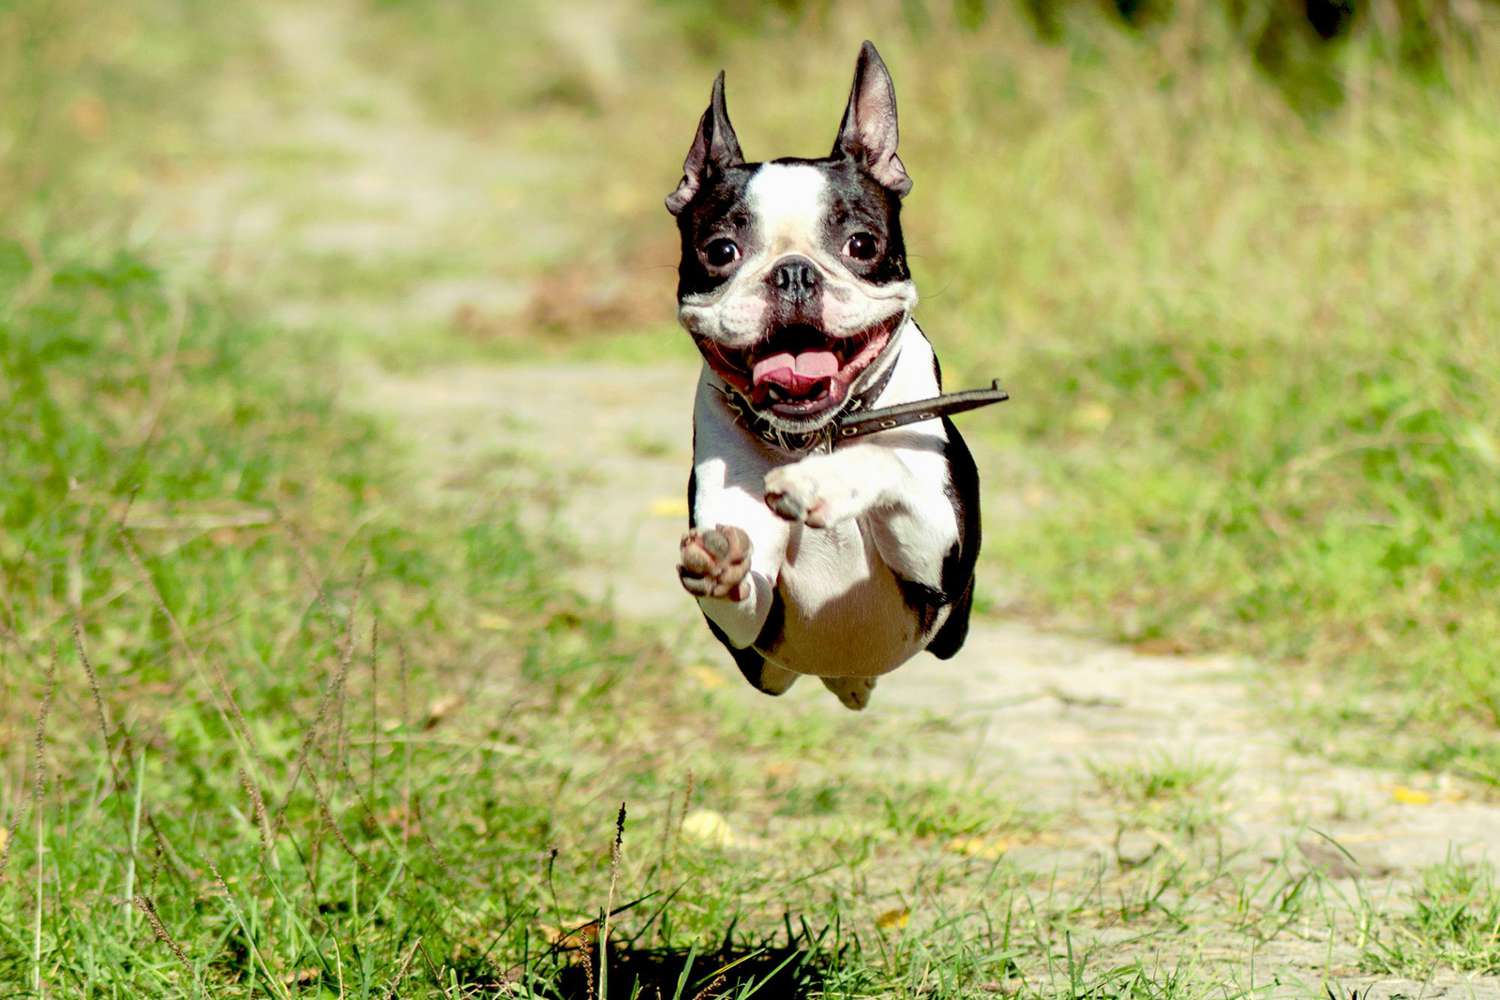 Boston terrier leaps through grass